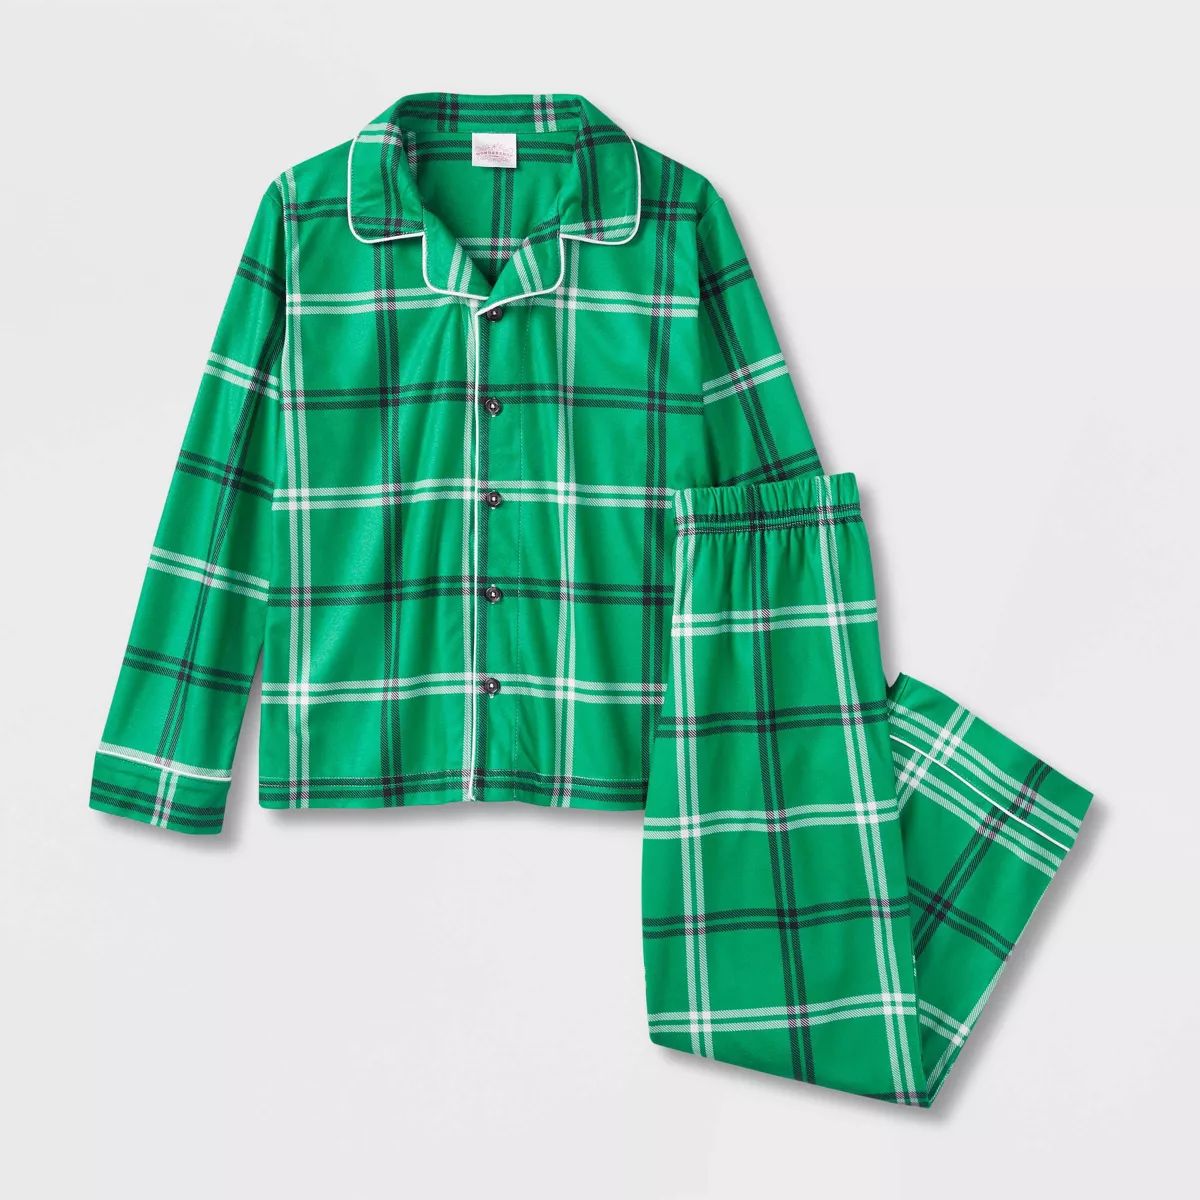 Kids' Plaid Matching Family Pajama Set - Wondershop™ Green | Target